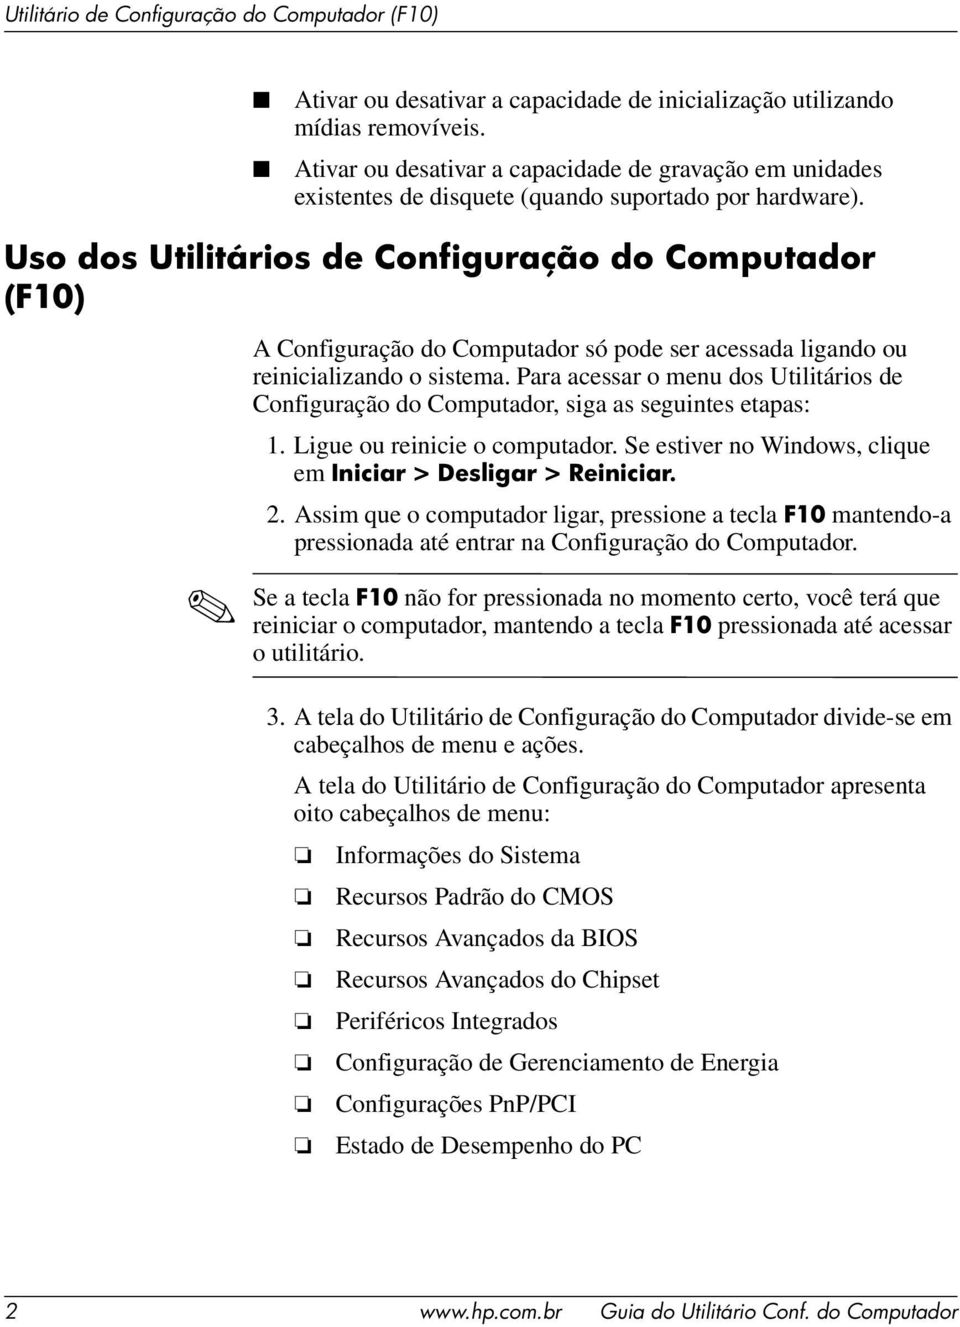 Para acessar o menu dos Utilitários de Configuração do Computador, siga as seguintes etapas: 1. Ligue ou reinicie o computador. Se estiver no Windows, clique em Iniciar > Desligar > Reiniciar. 2.